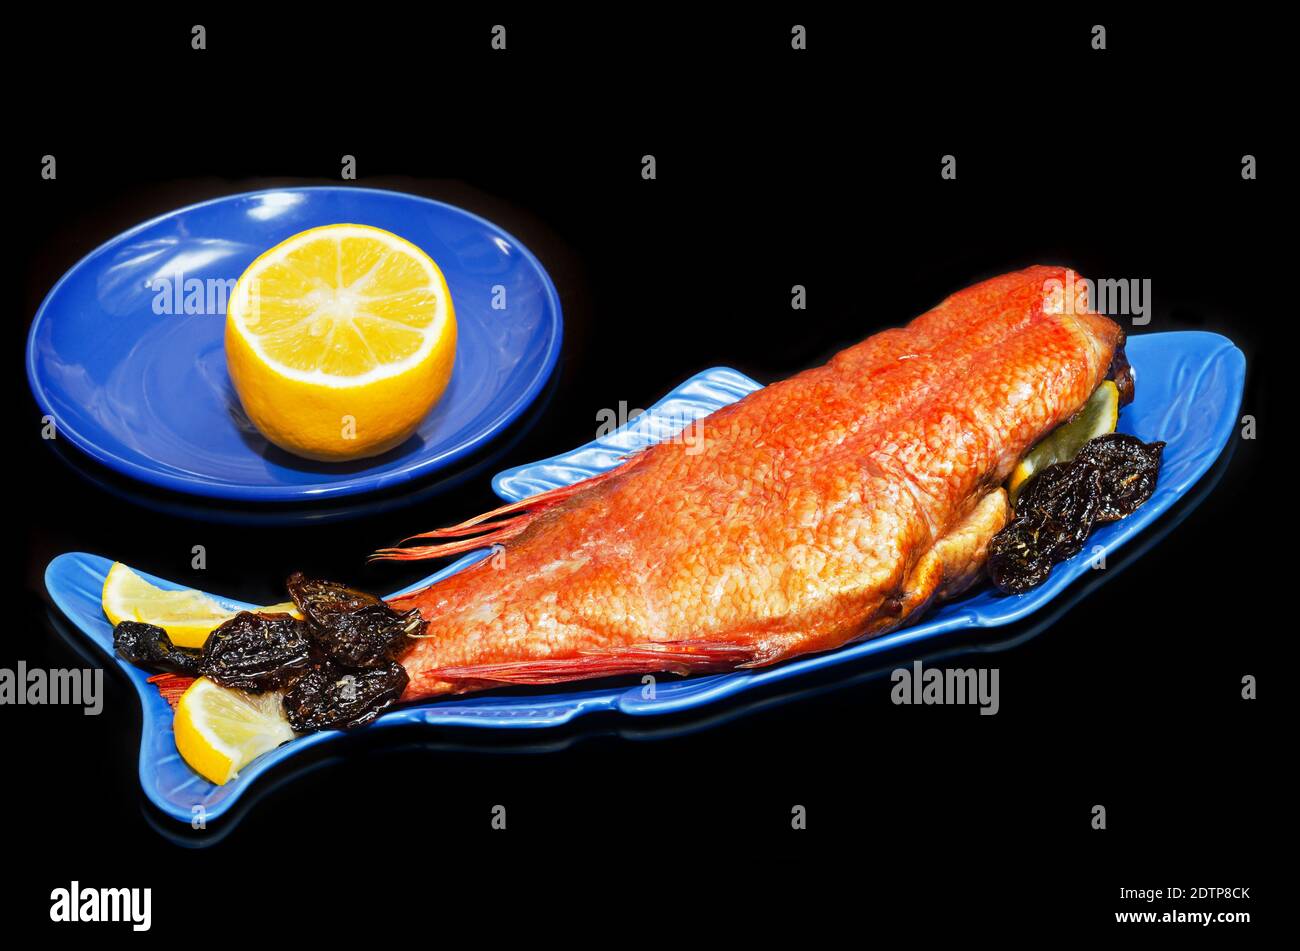 Bar chaud fumé avec citron et prunes épicées séchées, gros plan sur une assiette en forme de poisson et fond noir. Fruits de mer pour une bonne nutrition Banque D'Images